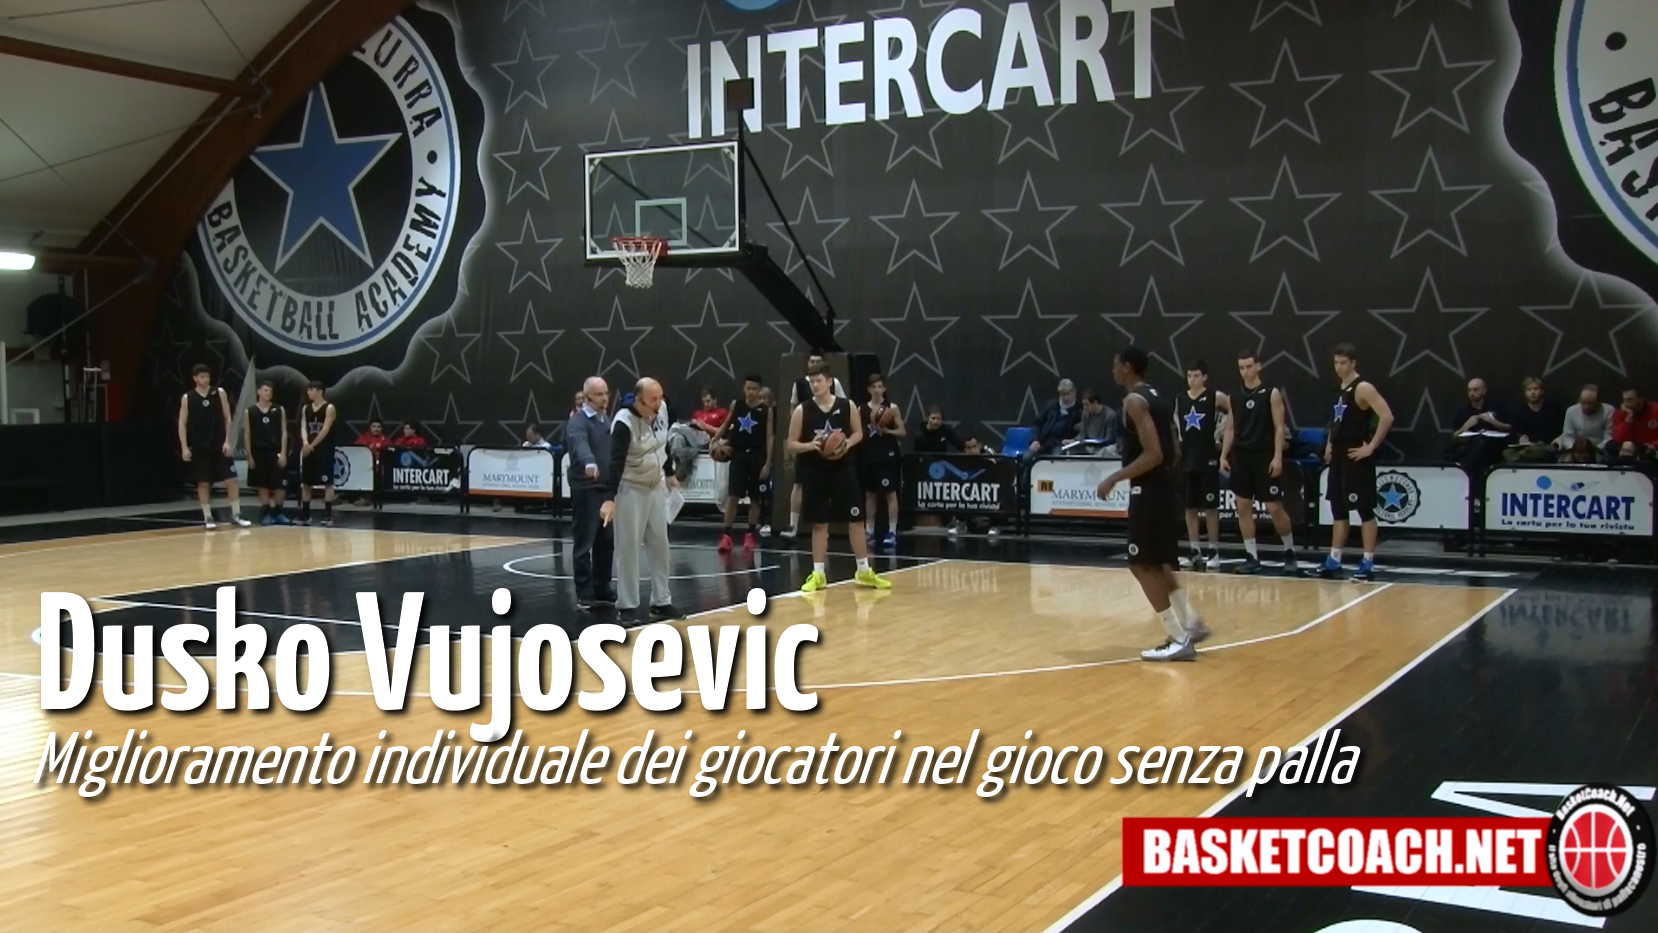 <p>Dusko Vujosevic - Miglioramento individuale dei giocatori nel gioco senza palla</p>
